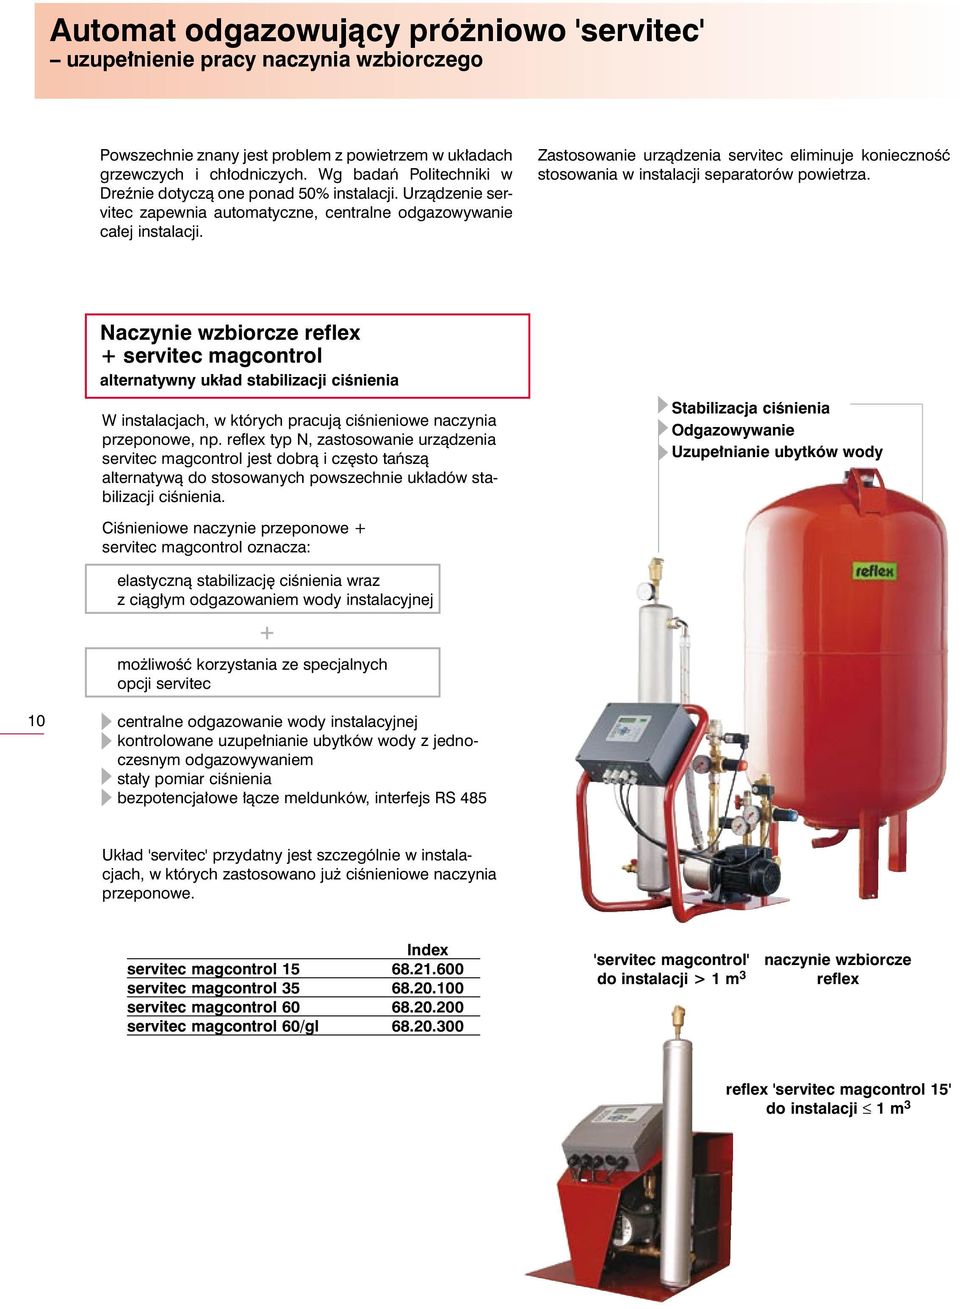 Zastosowanie urzàdzenia servitec eliminuje koniecznoêç stosowania w instalacji separatorów powietrza.